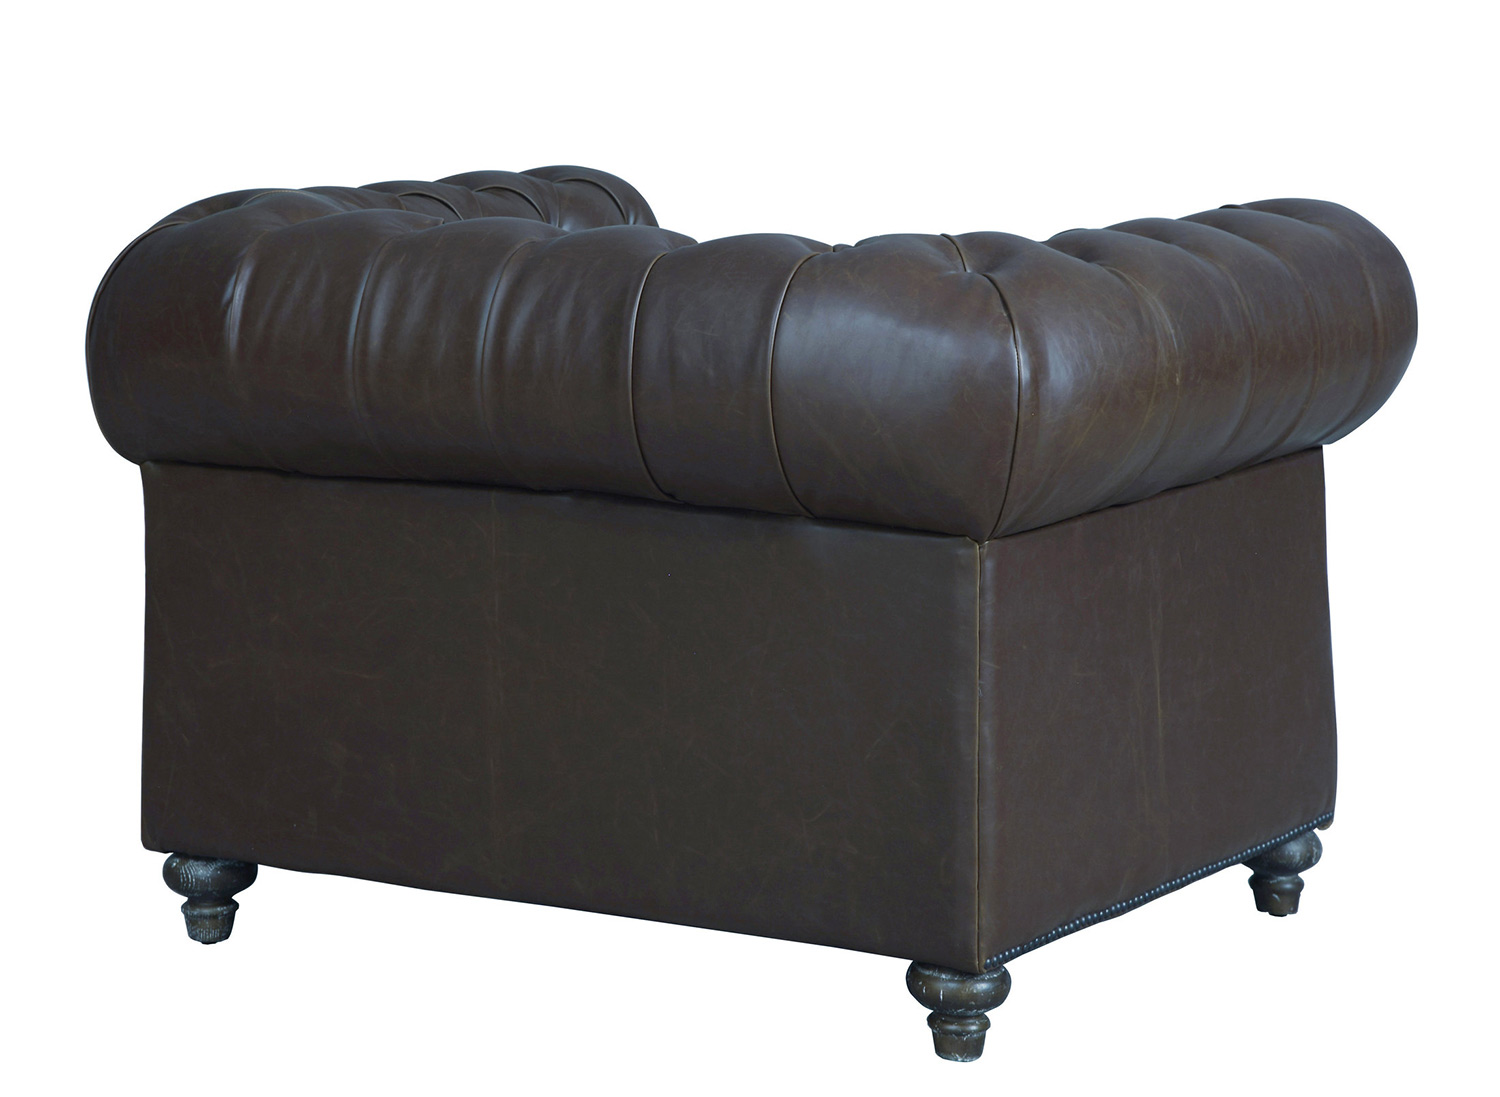 TOV Furniture Durango Leather Club Chair - Antique Brown